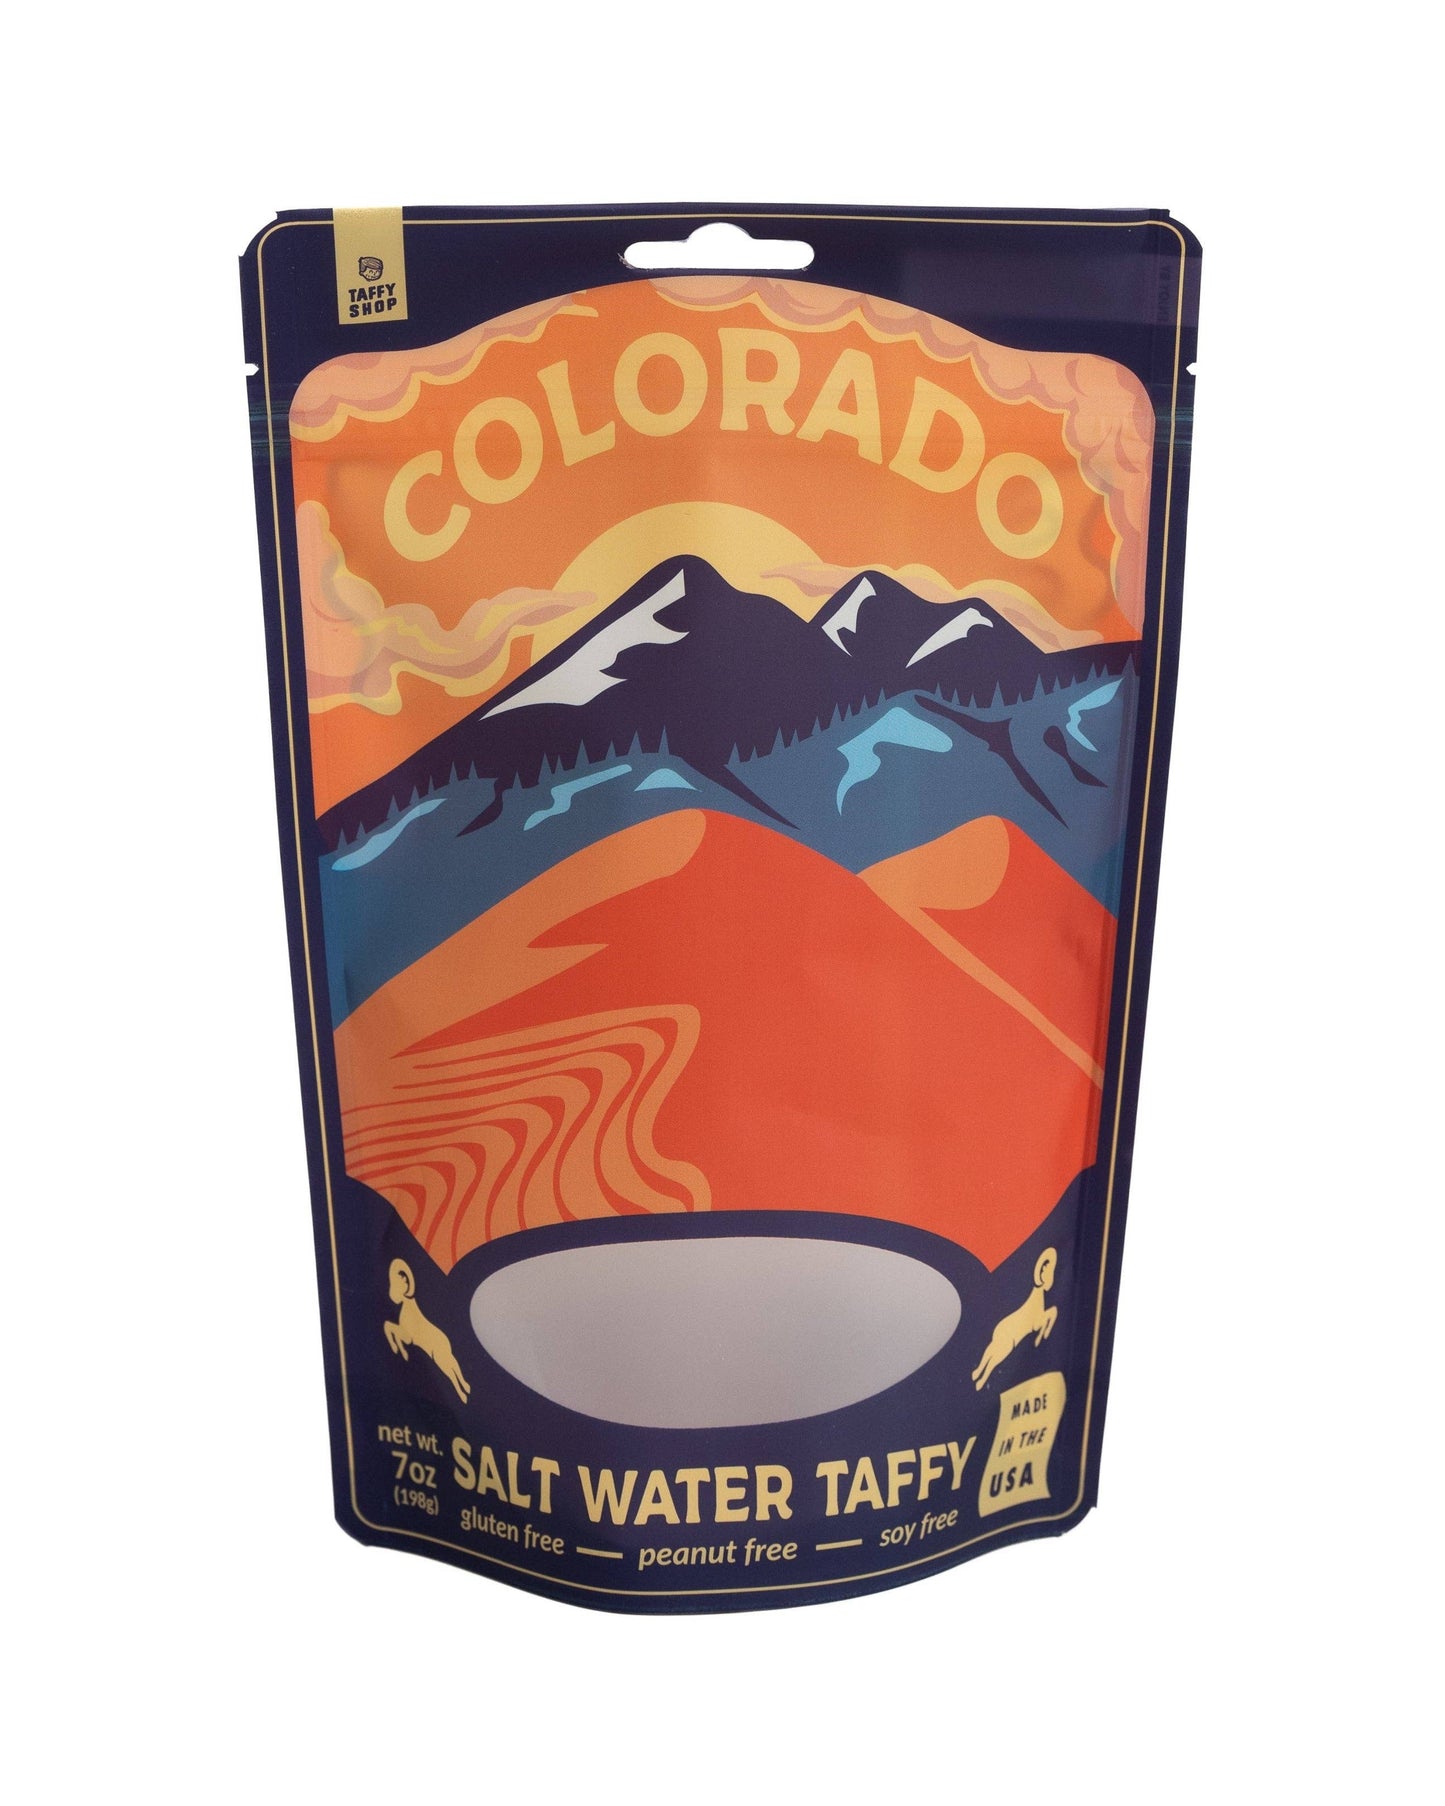 Colorado Taffy Bag